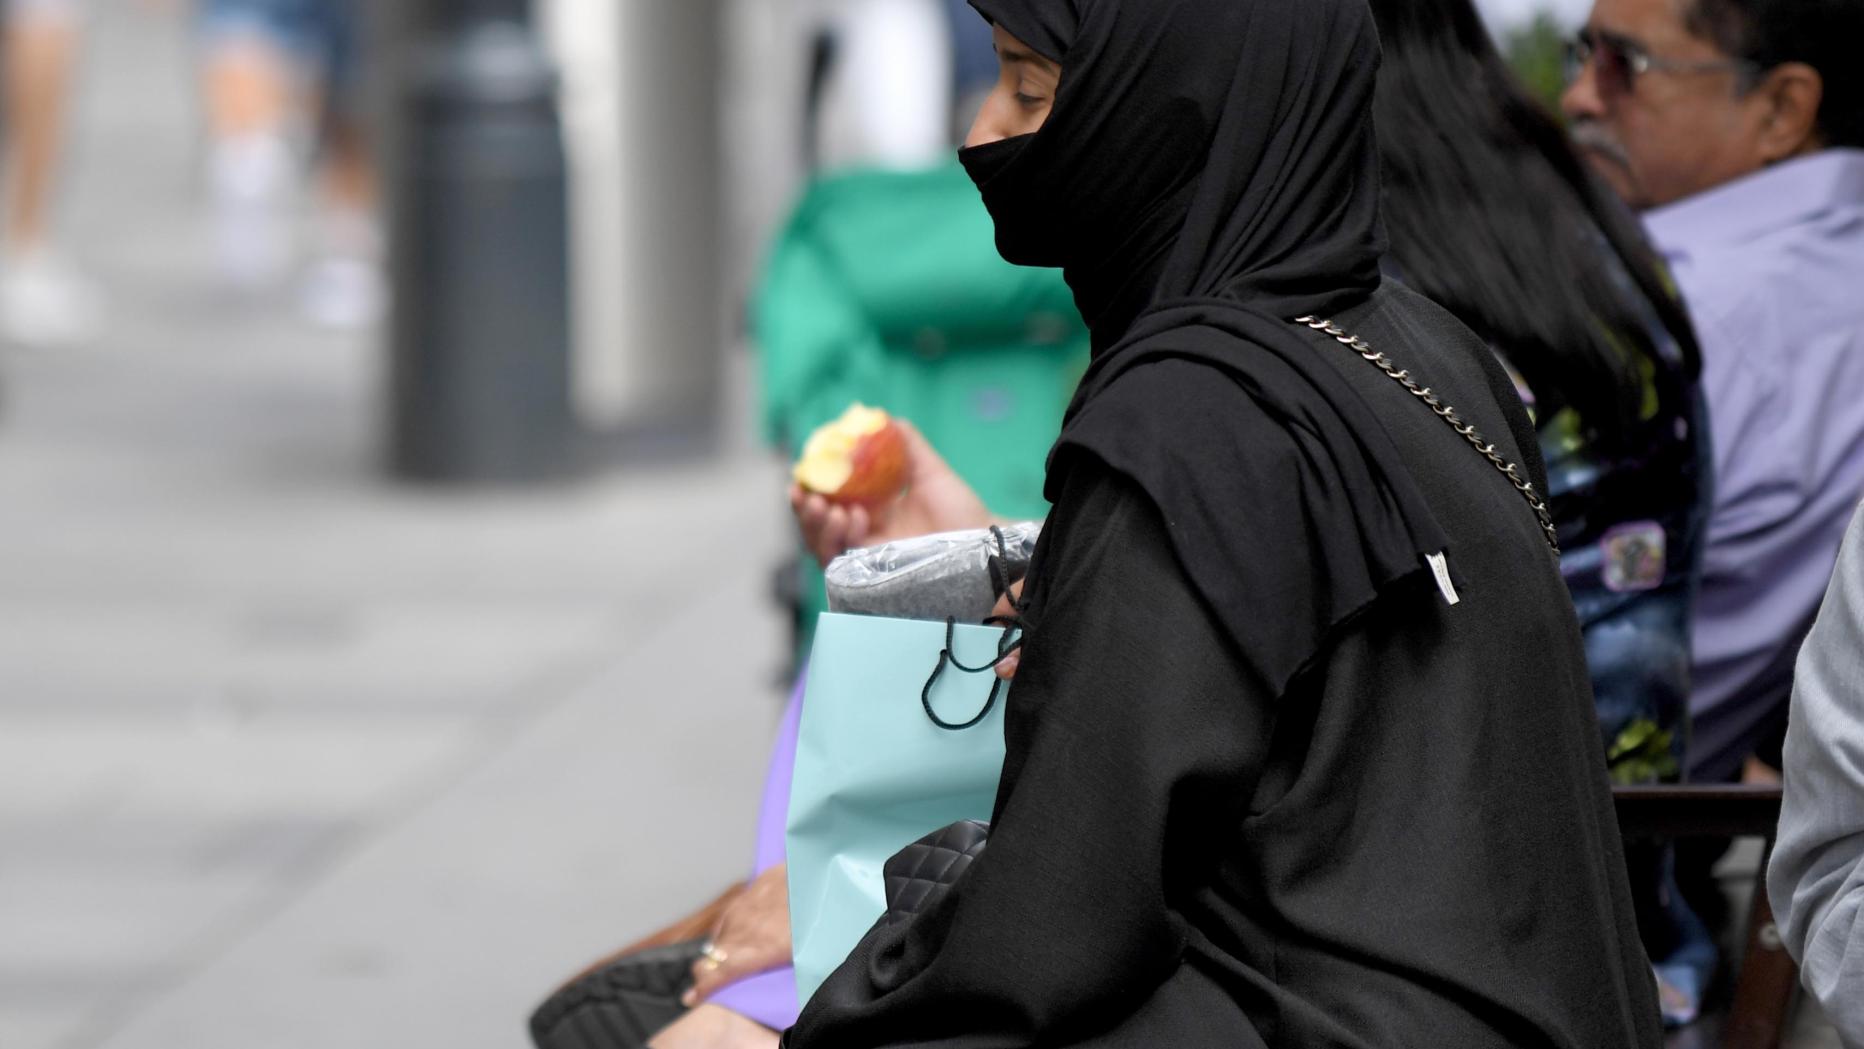 Zwischenbilanz Zum Burkaverbot „wir Vermelden Keine Verstöße“